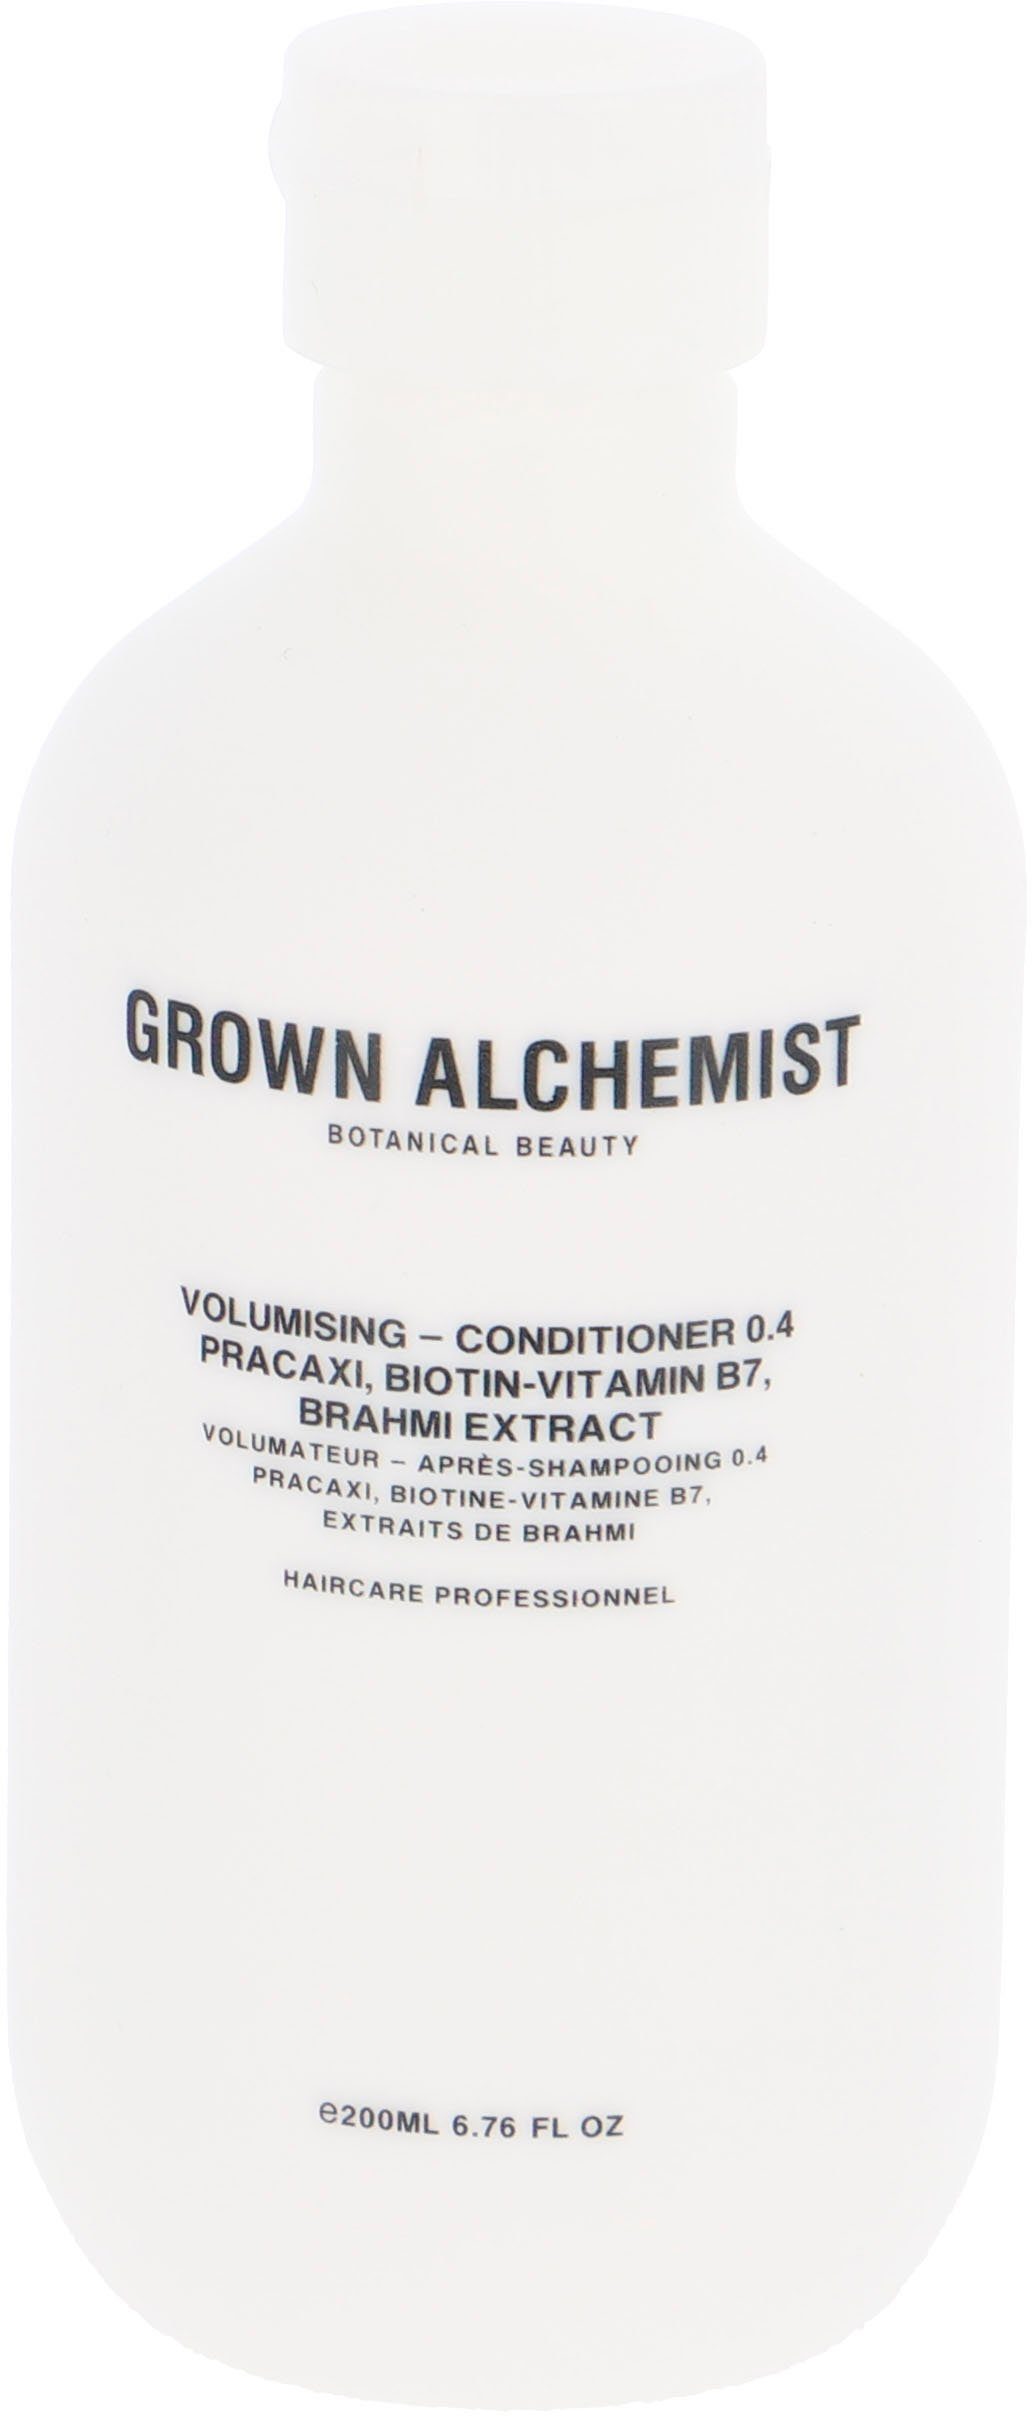 GROWN ALCHEMIST Haarspülung Volumising - Conditioner 0.4, Pracaxi, Biotin-Vitamin B7, Brahmi Extract | Spülungen